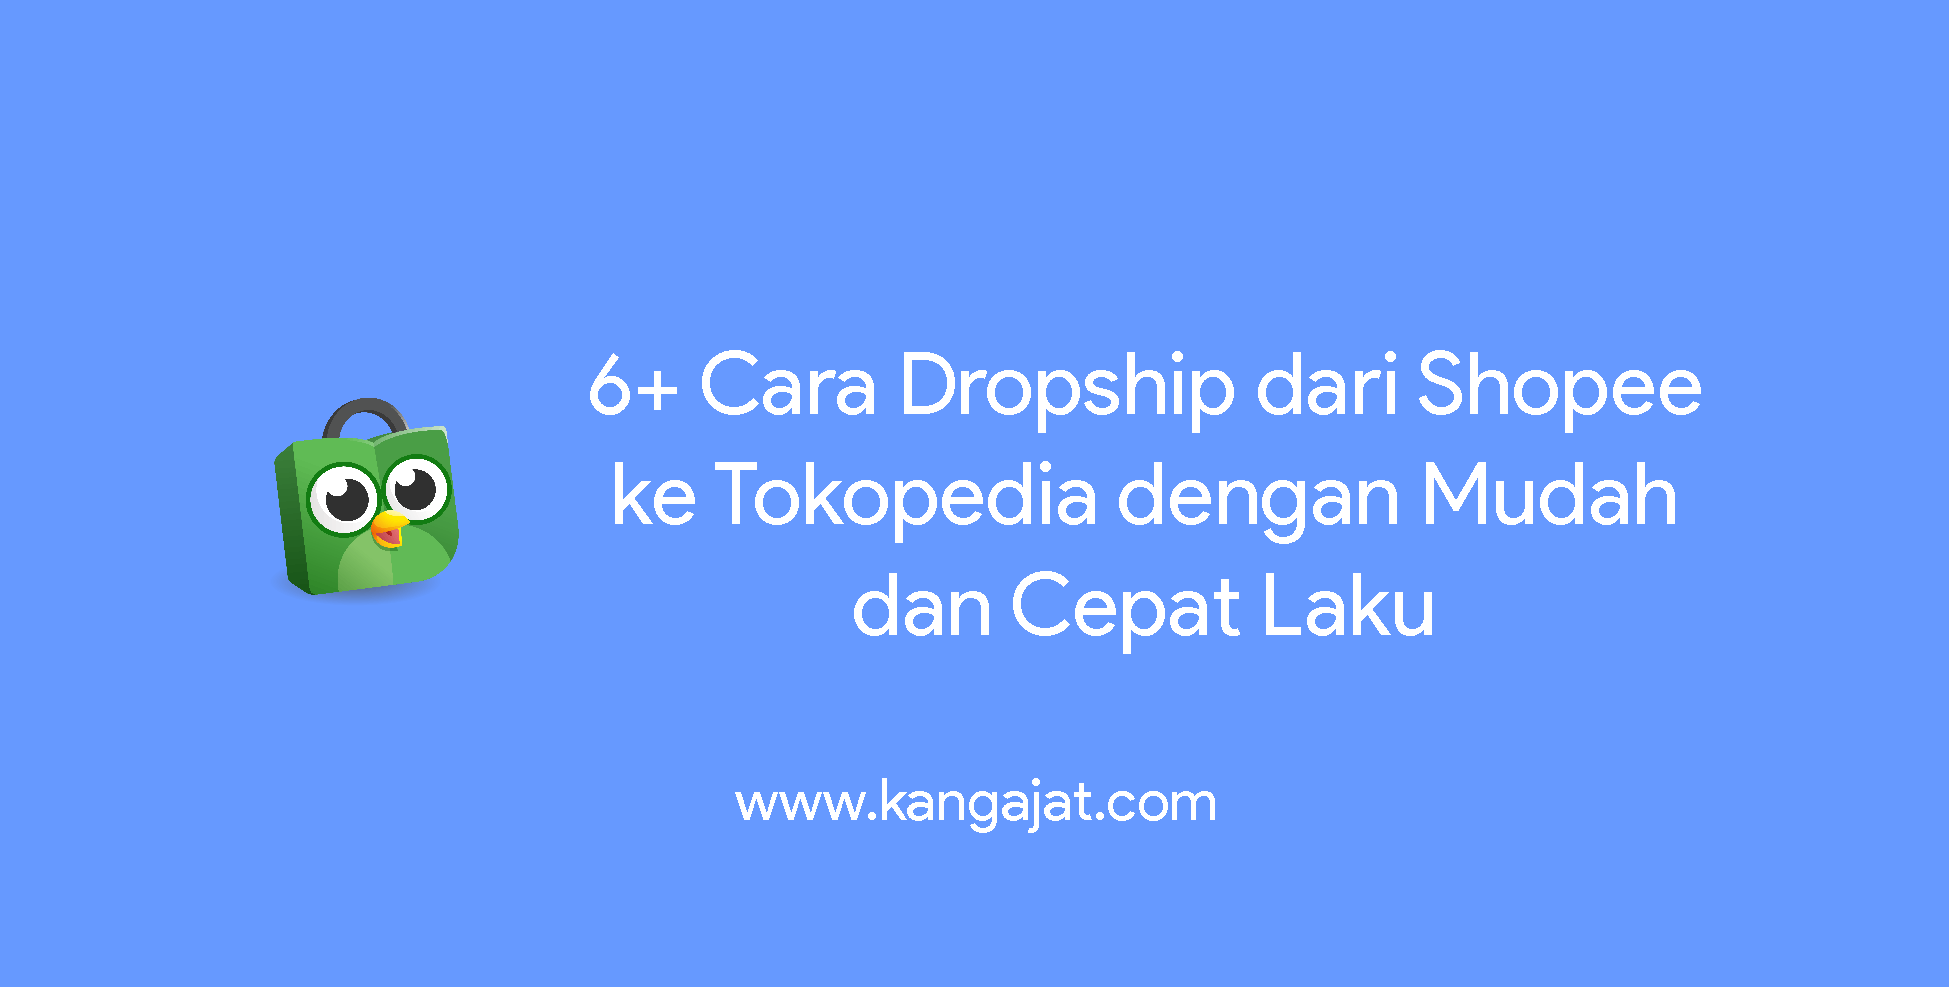 6+ Cara Dropship dari Shopee ke Tokopedia dengan Mudah dan Cepat Laku